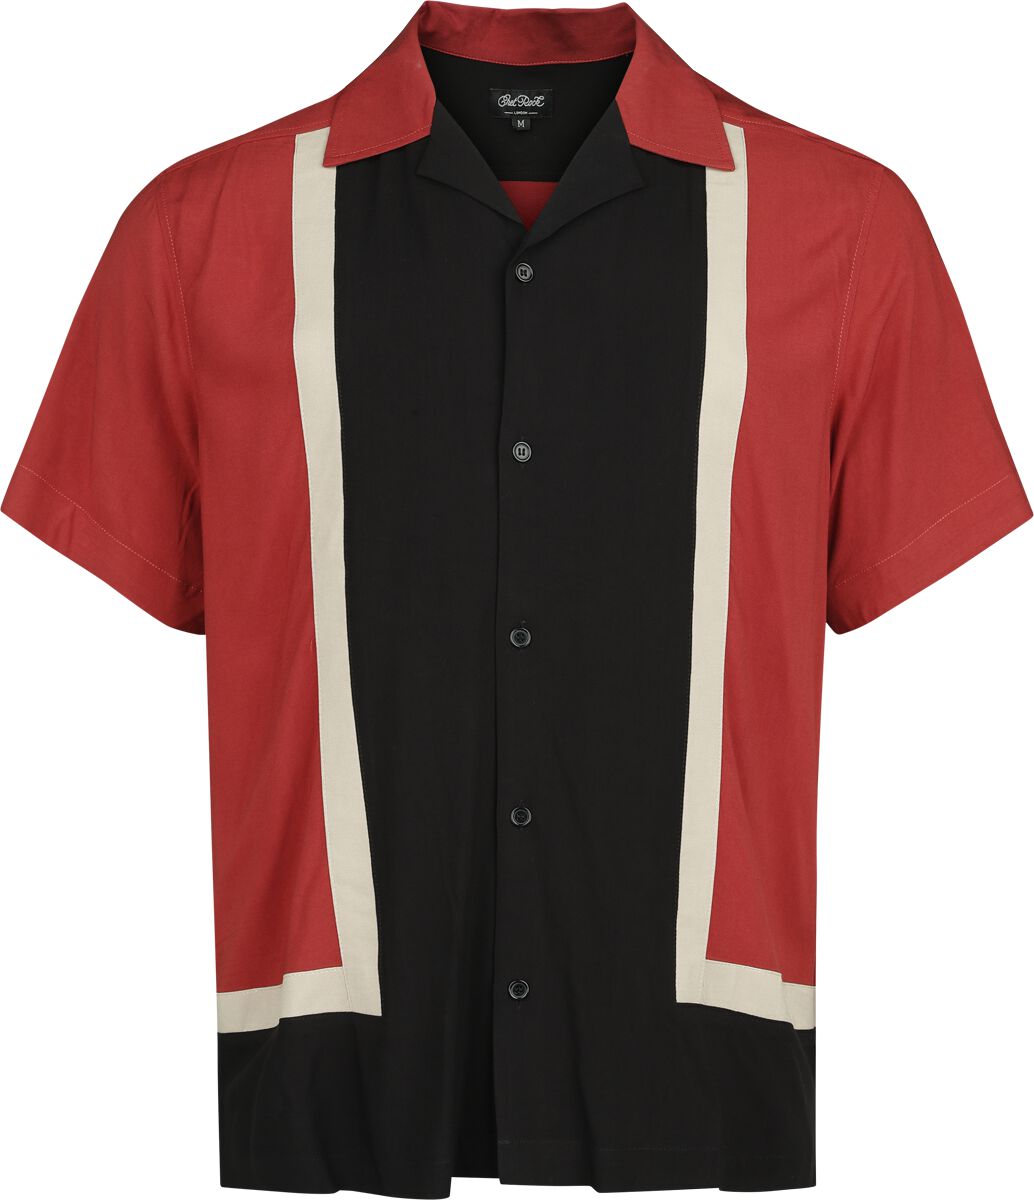 Image of Camicia Maniche Corte Rockabilly di Chet Rock - Walter bowling shirt - S a XL - Uomo - rosso/nero